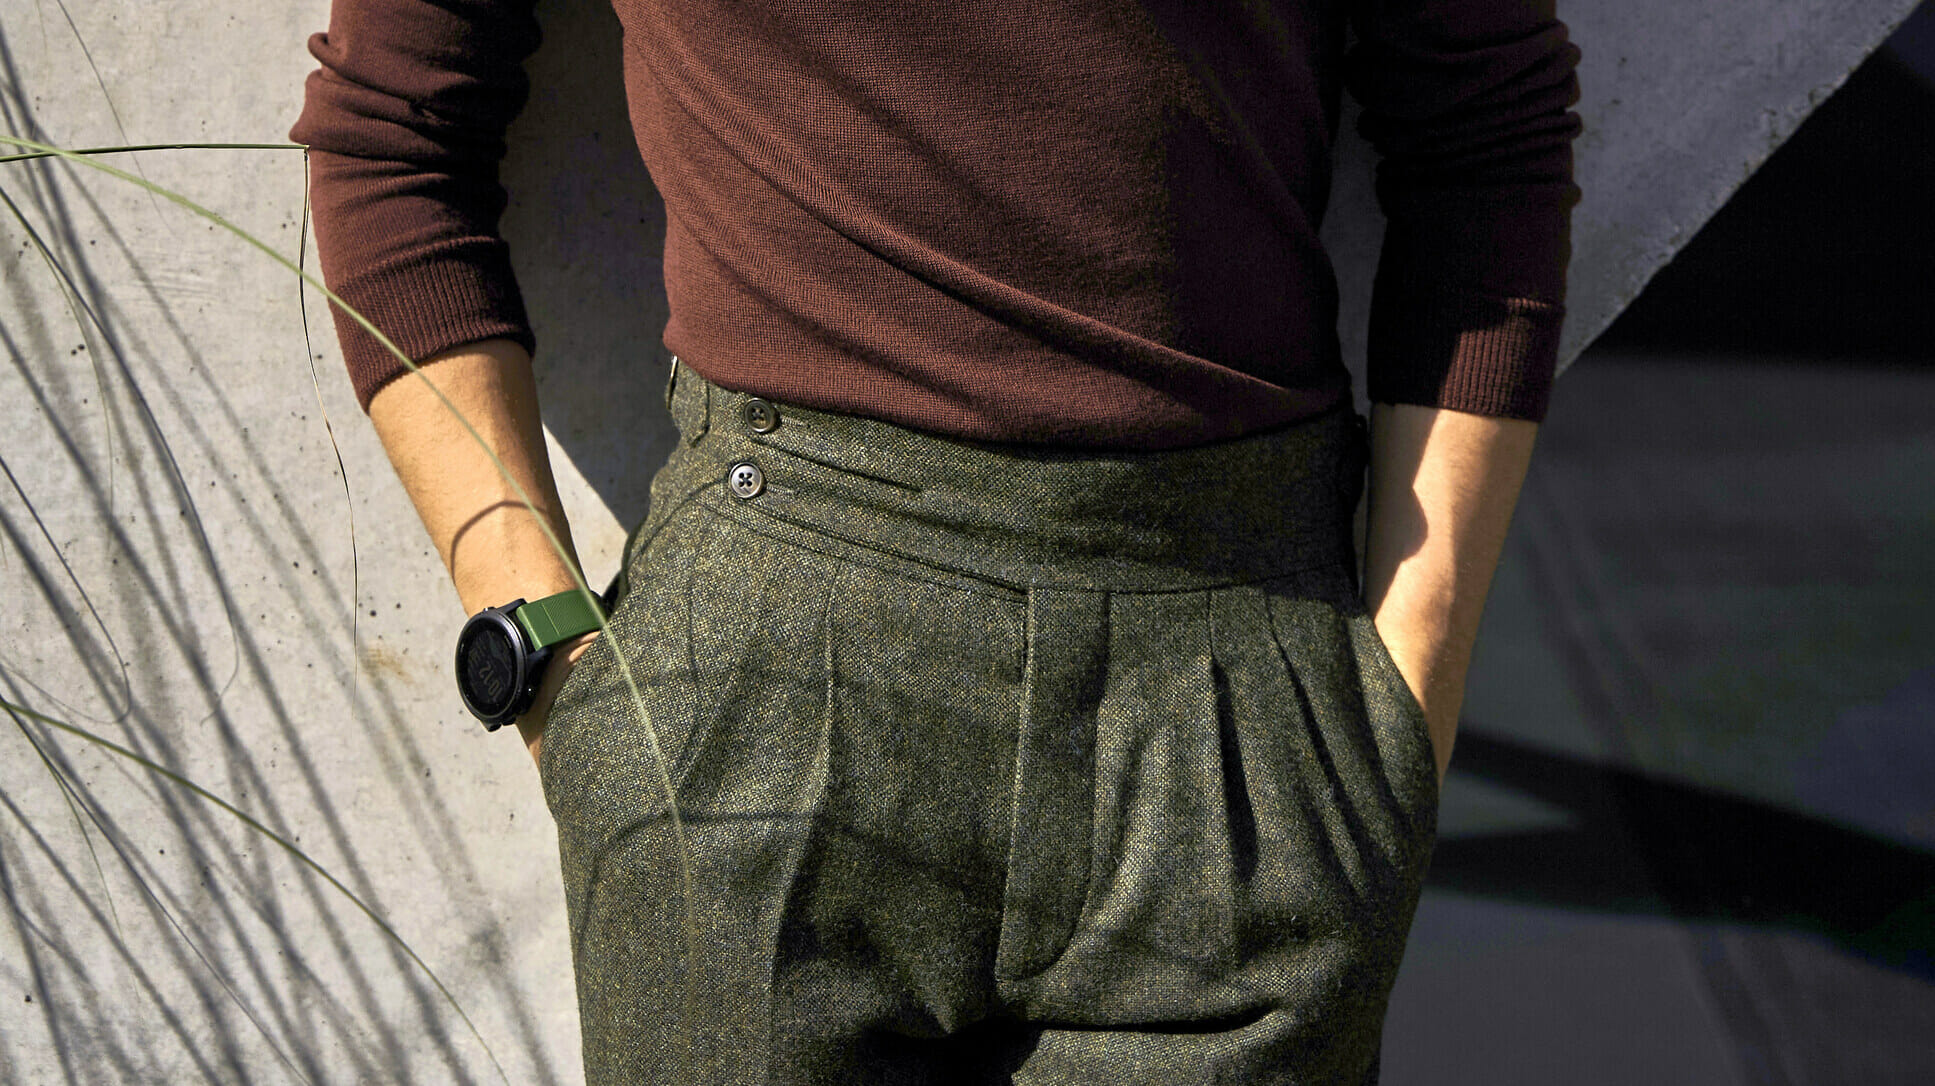 Spodnie tweedowe męskie. Czy mogą zastąpić jeansy?